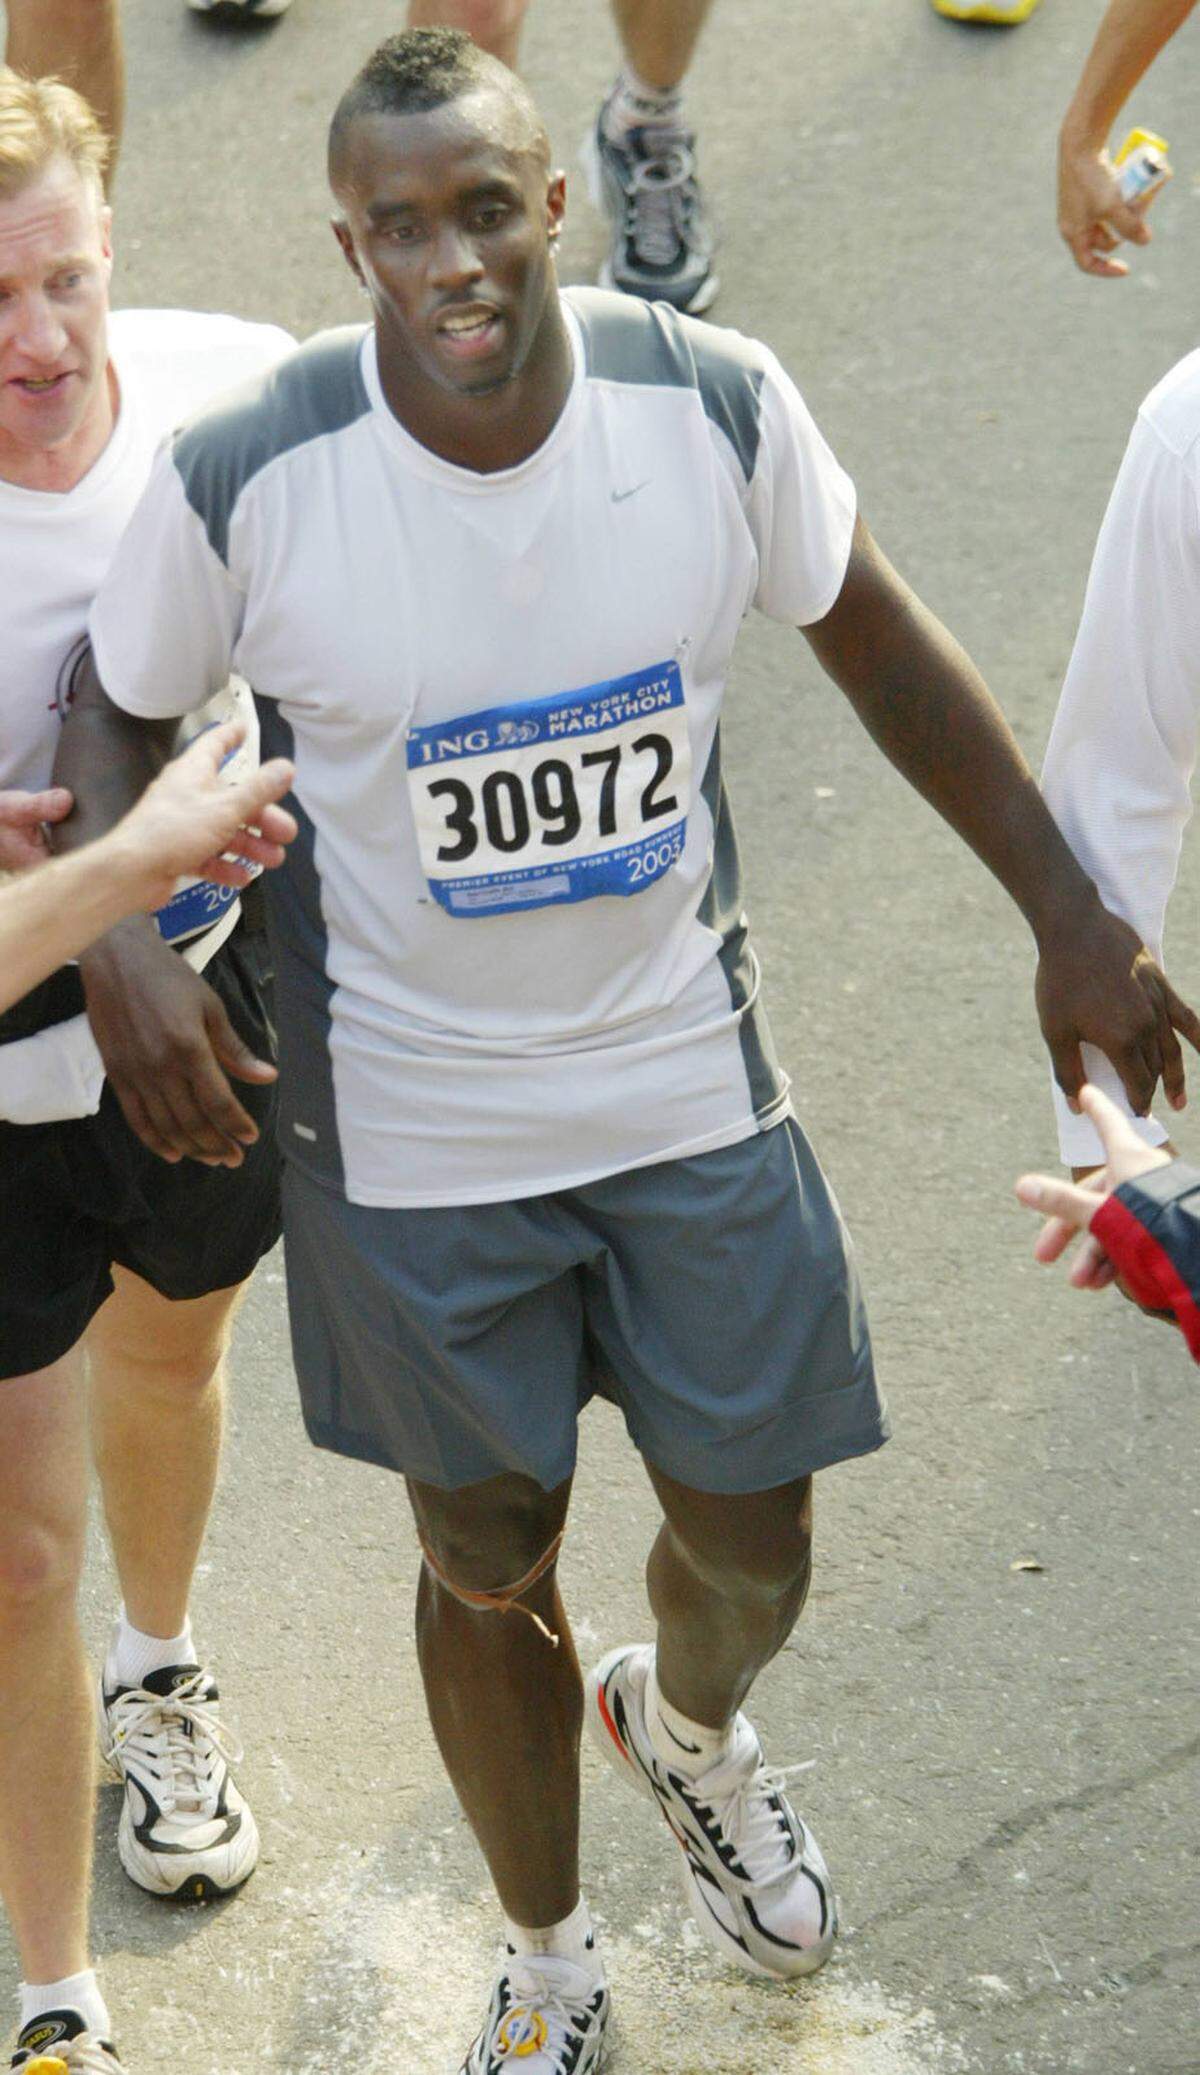 Auch kein Poser, Rapper P. Diddy lief den New York Marathon 2003 in einer Zeit von 4:14:52.